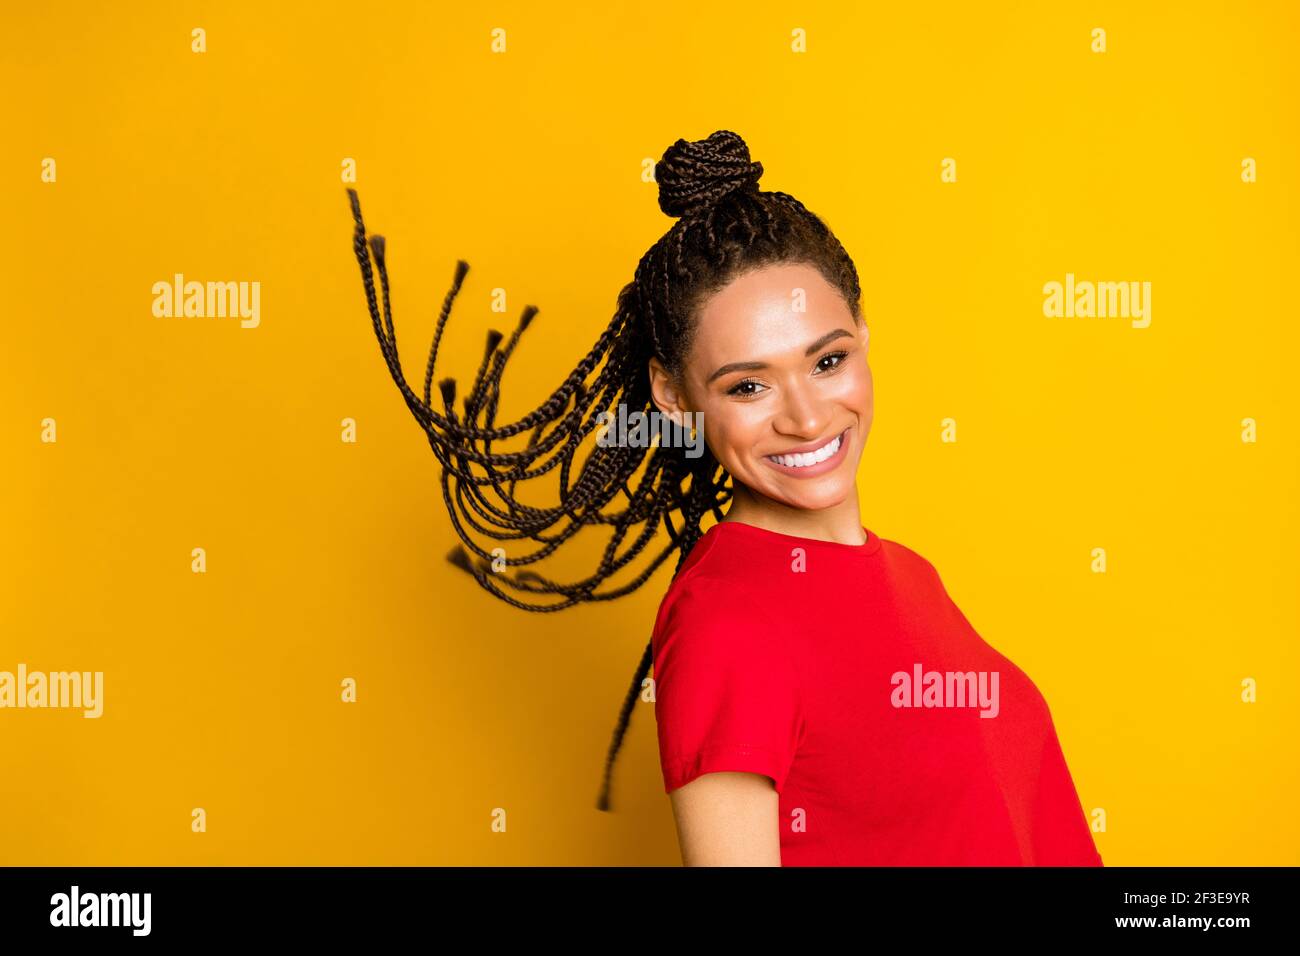 Portrait de profil de charmant sans souci peau sombre fille cheveux volant sourire éclatant isolé sur fond jaune Banque D'Images